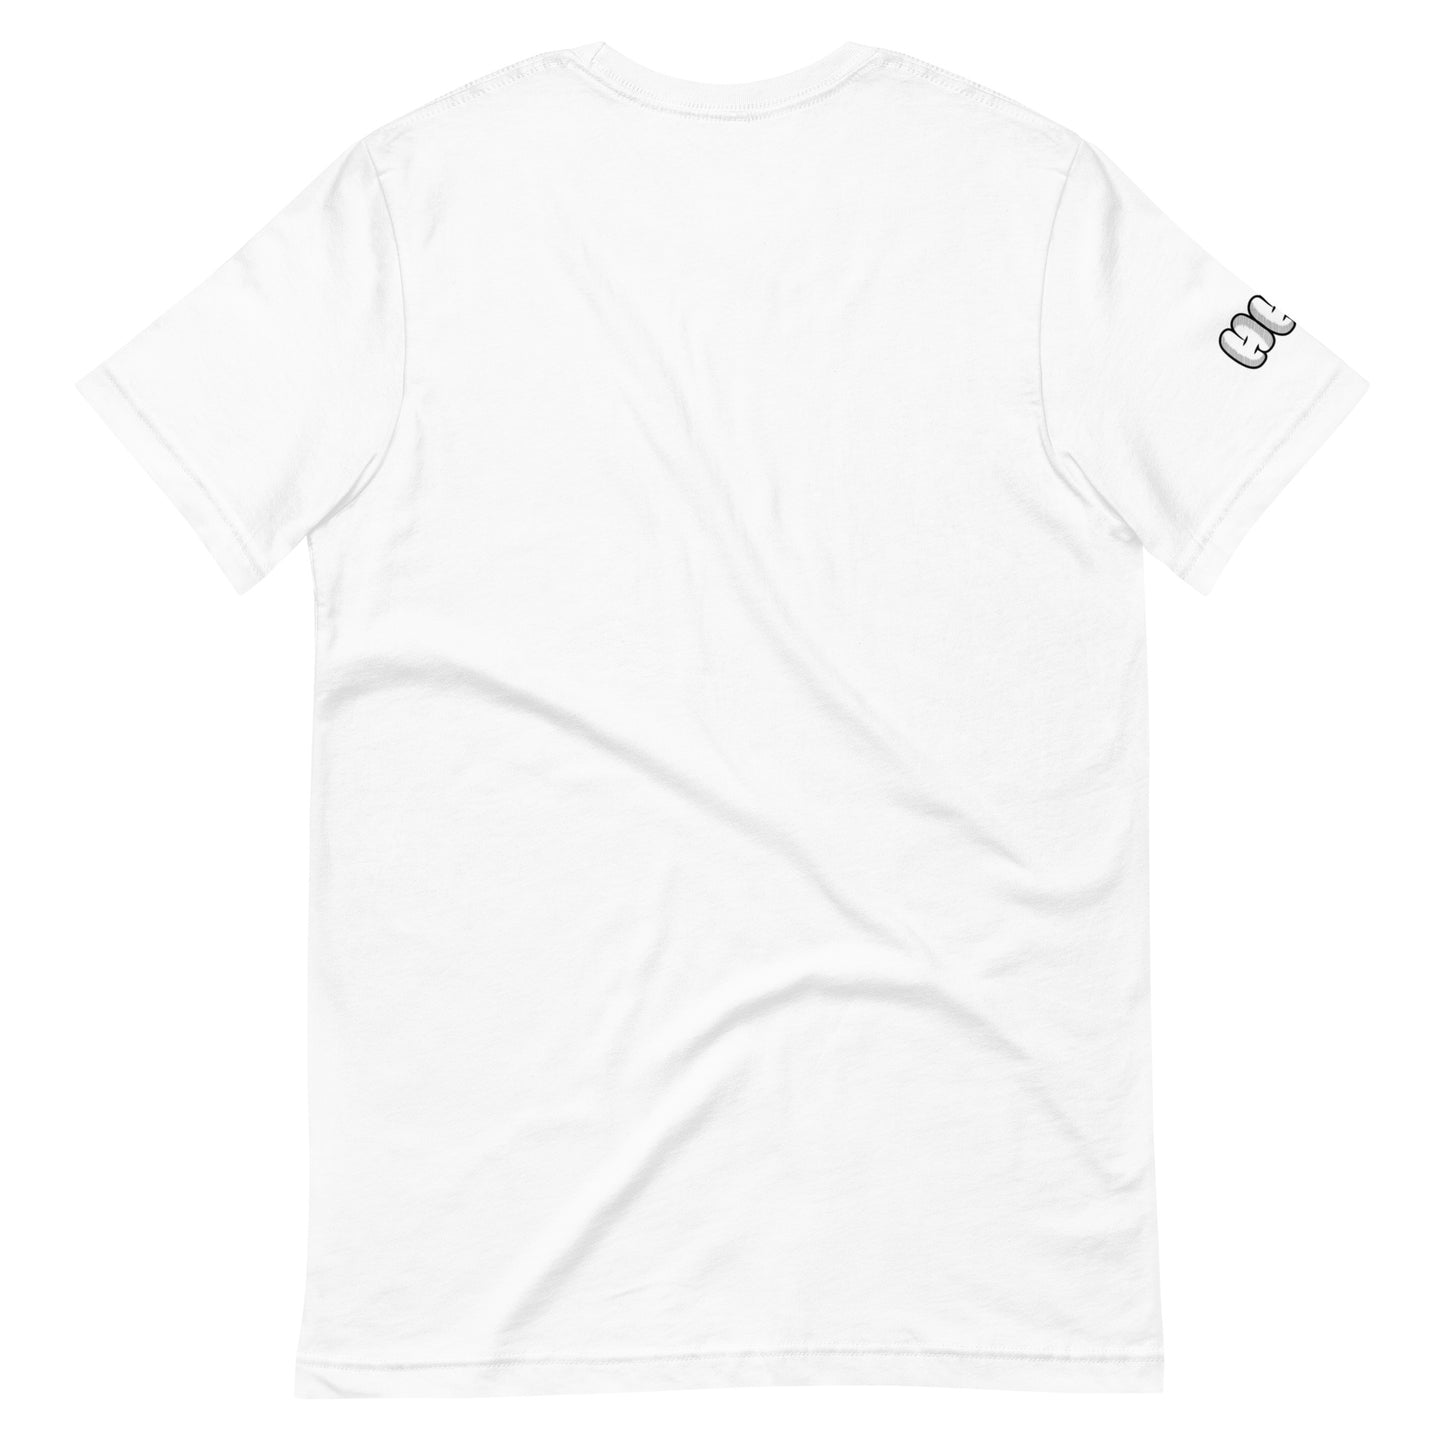 PFP Blondie Unisex T-Shirt